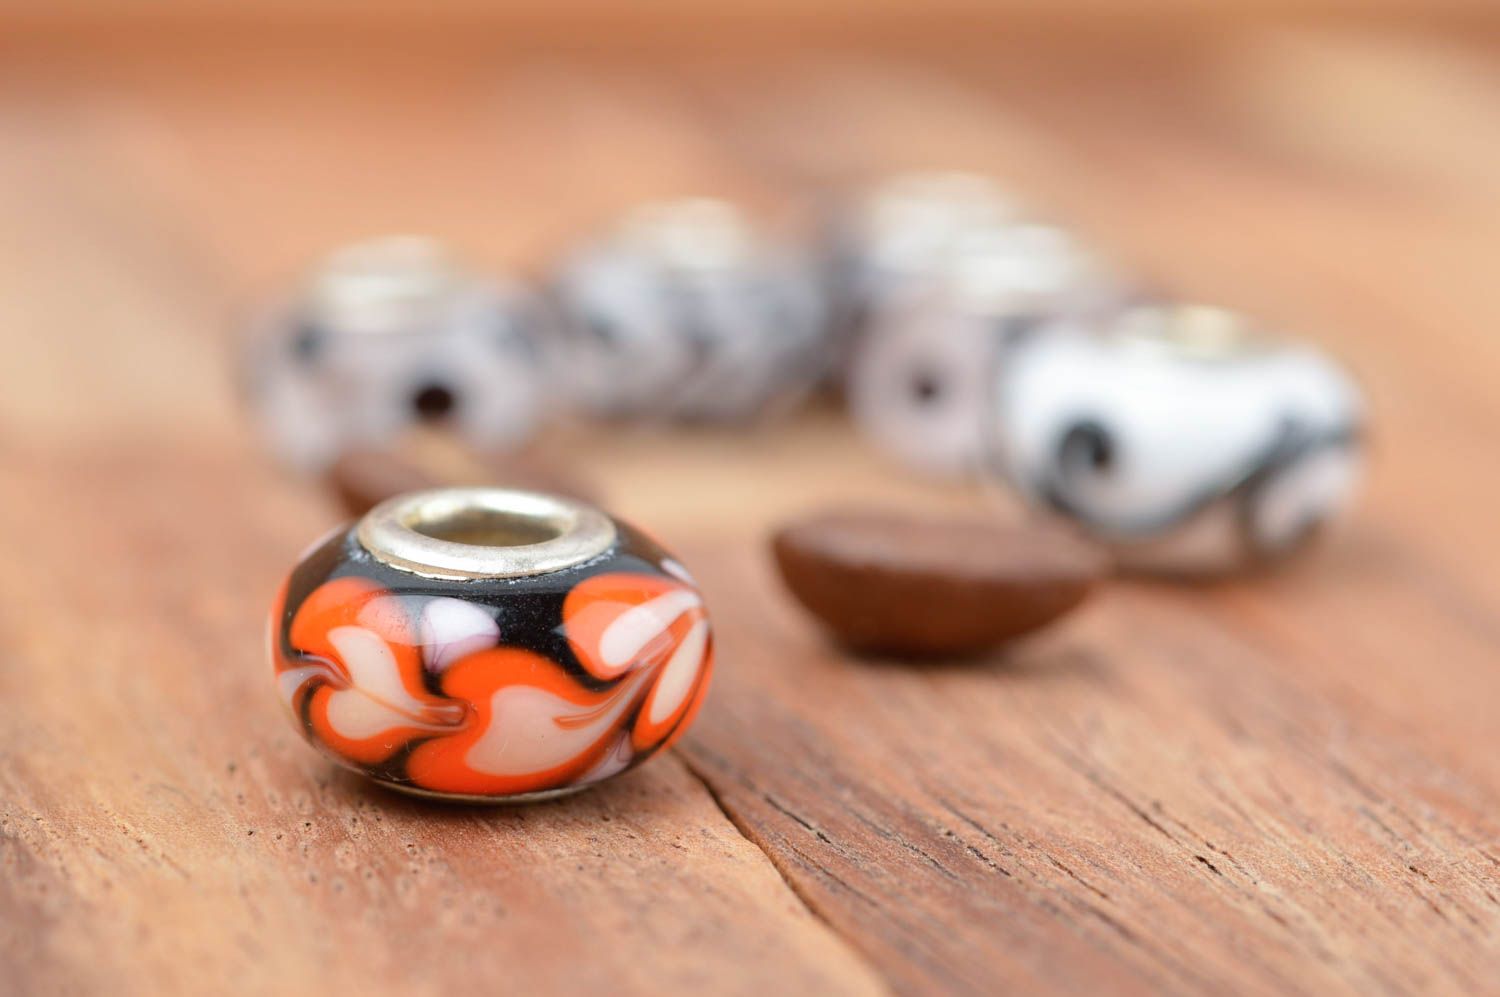 Beautiful handmade glass bead craft supplies glass art materials gift ideas photo 1